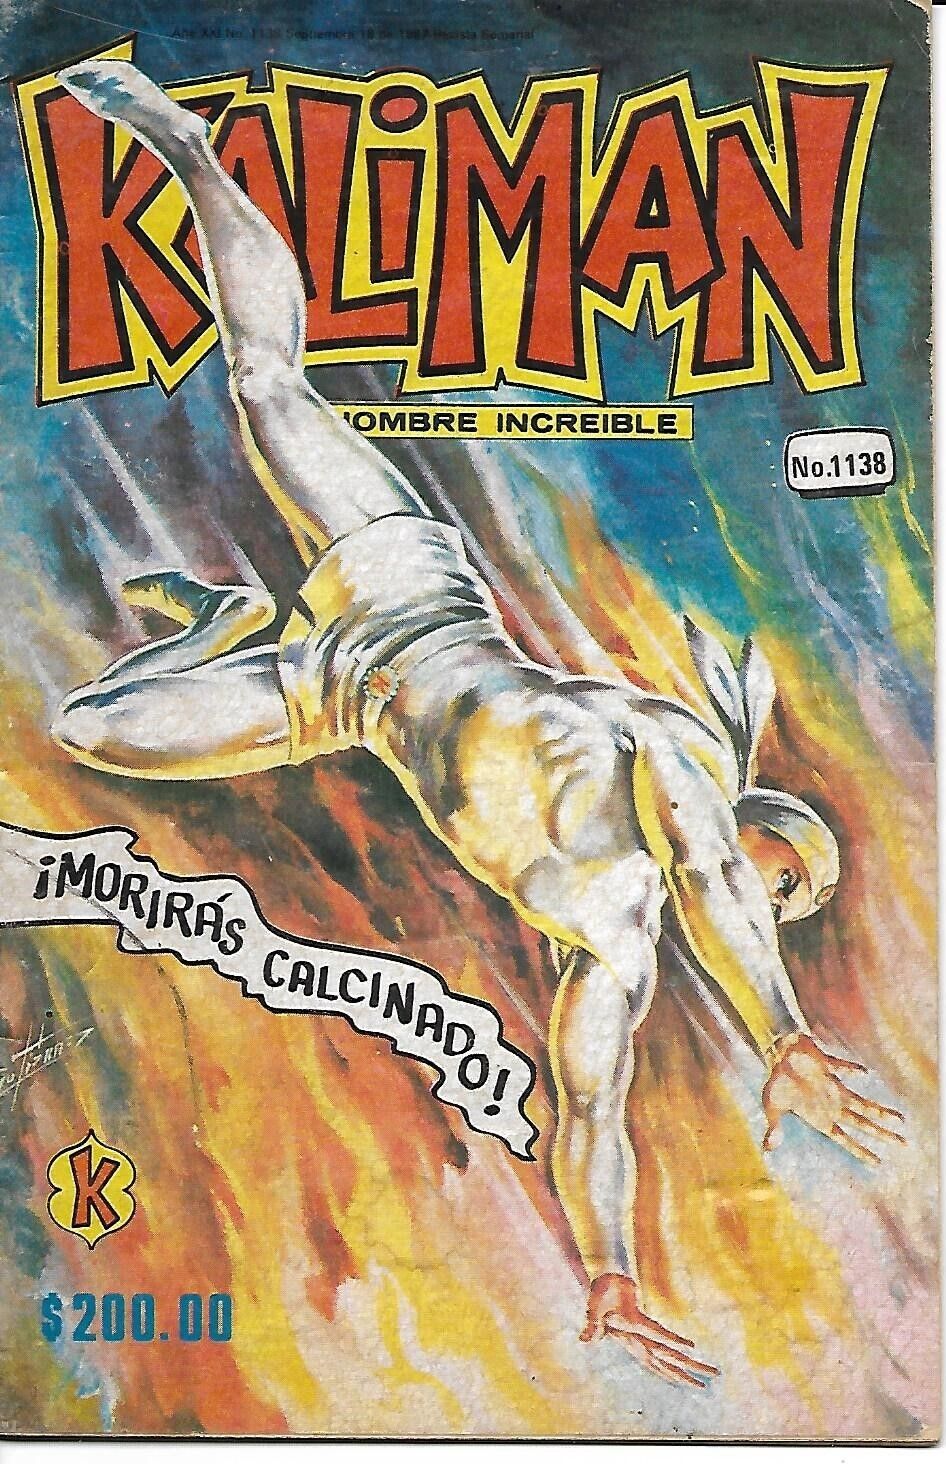 Kaliman El Hombre Increible #1138 - Septiembre 18, 1987